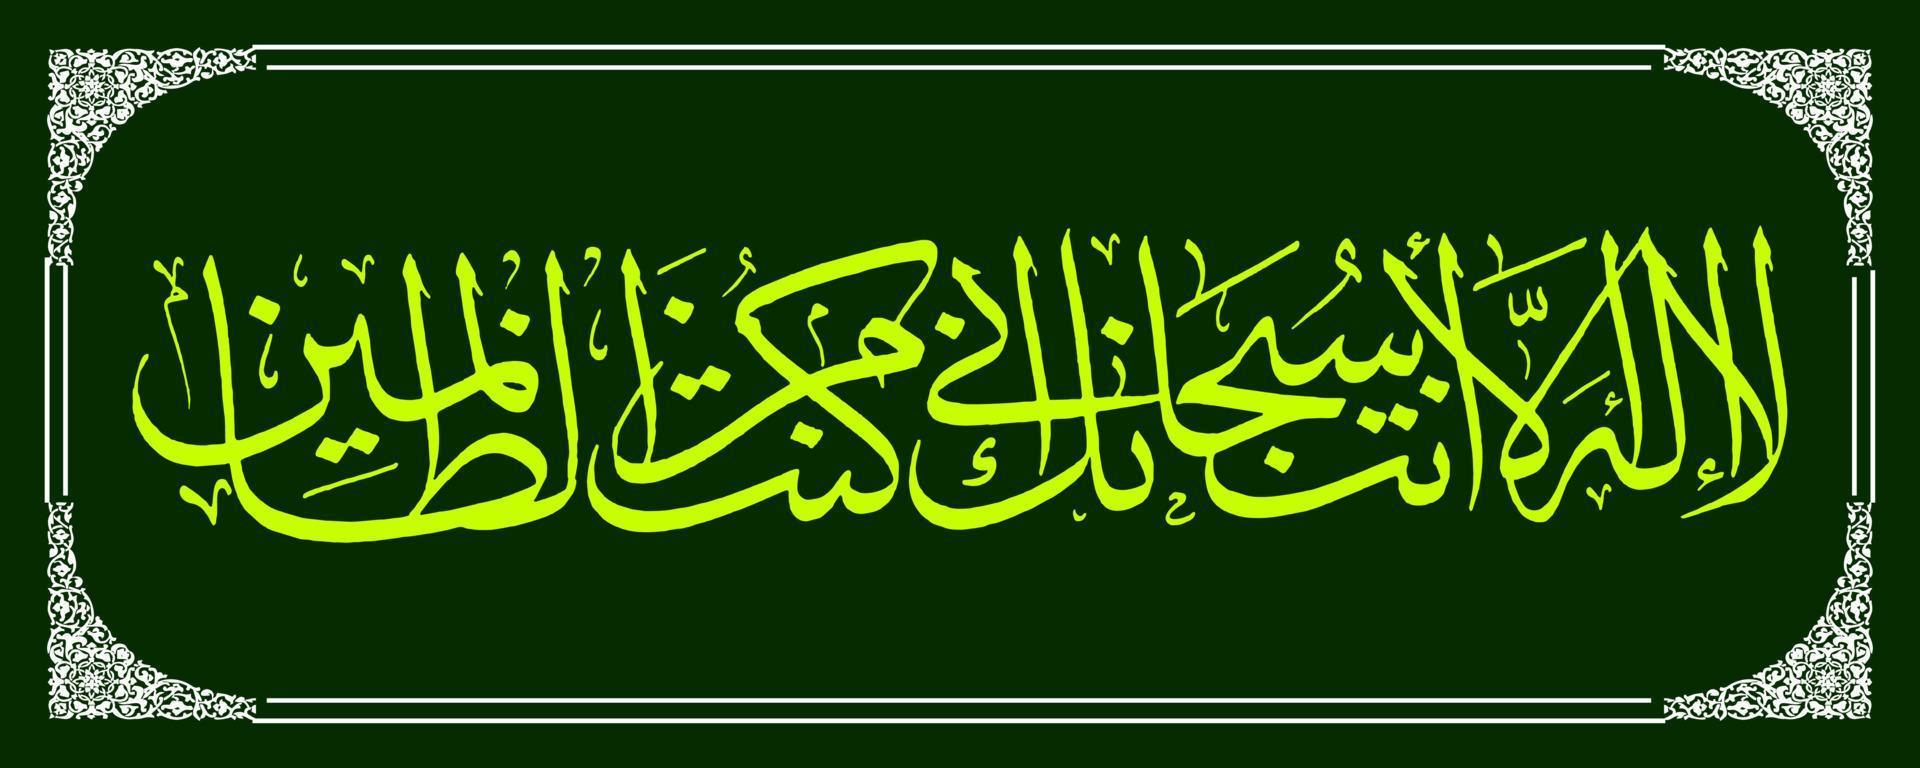 calligraphie arabe du coran sourate al anbiya verset 87, traduction qu'il n'y a pas d'autre dieu que toi. gloire à toi, en vérité je suis du nombre des malfaiteurs. vecteur